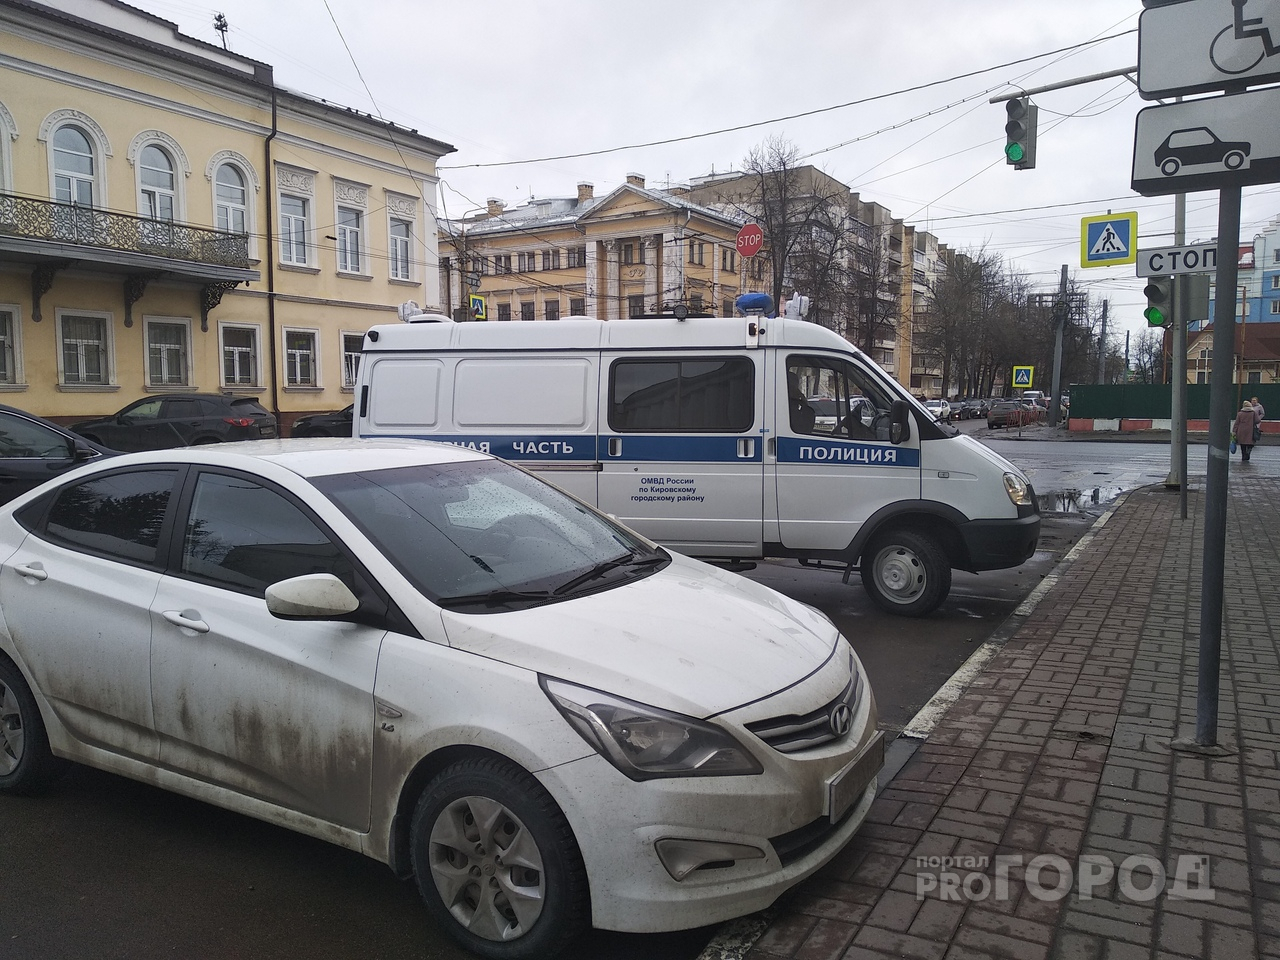 Тотальная зачистка в Ярославле: взяли криминальных авторитетов и силовика